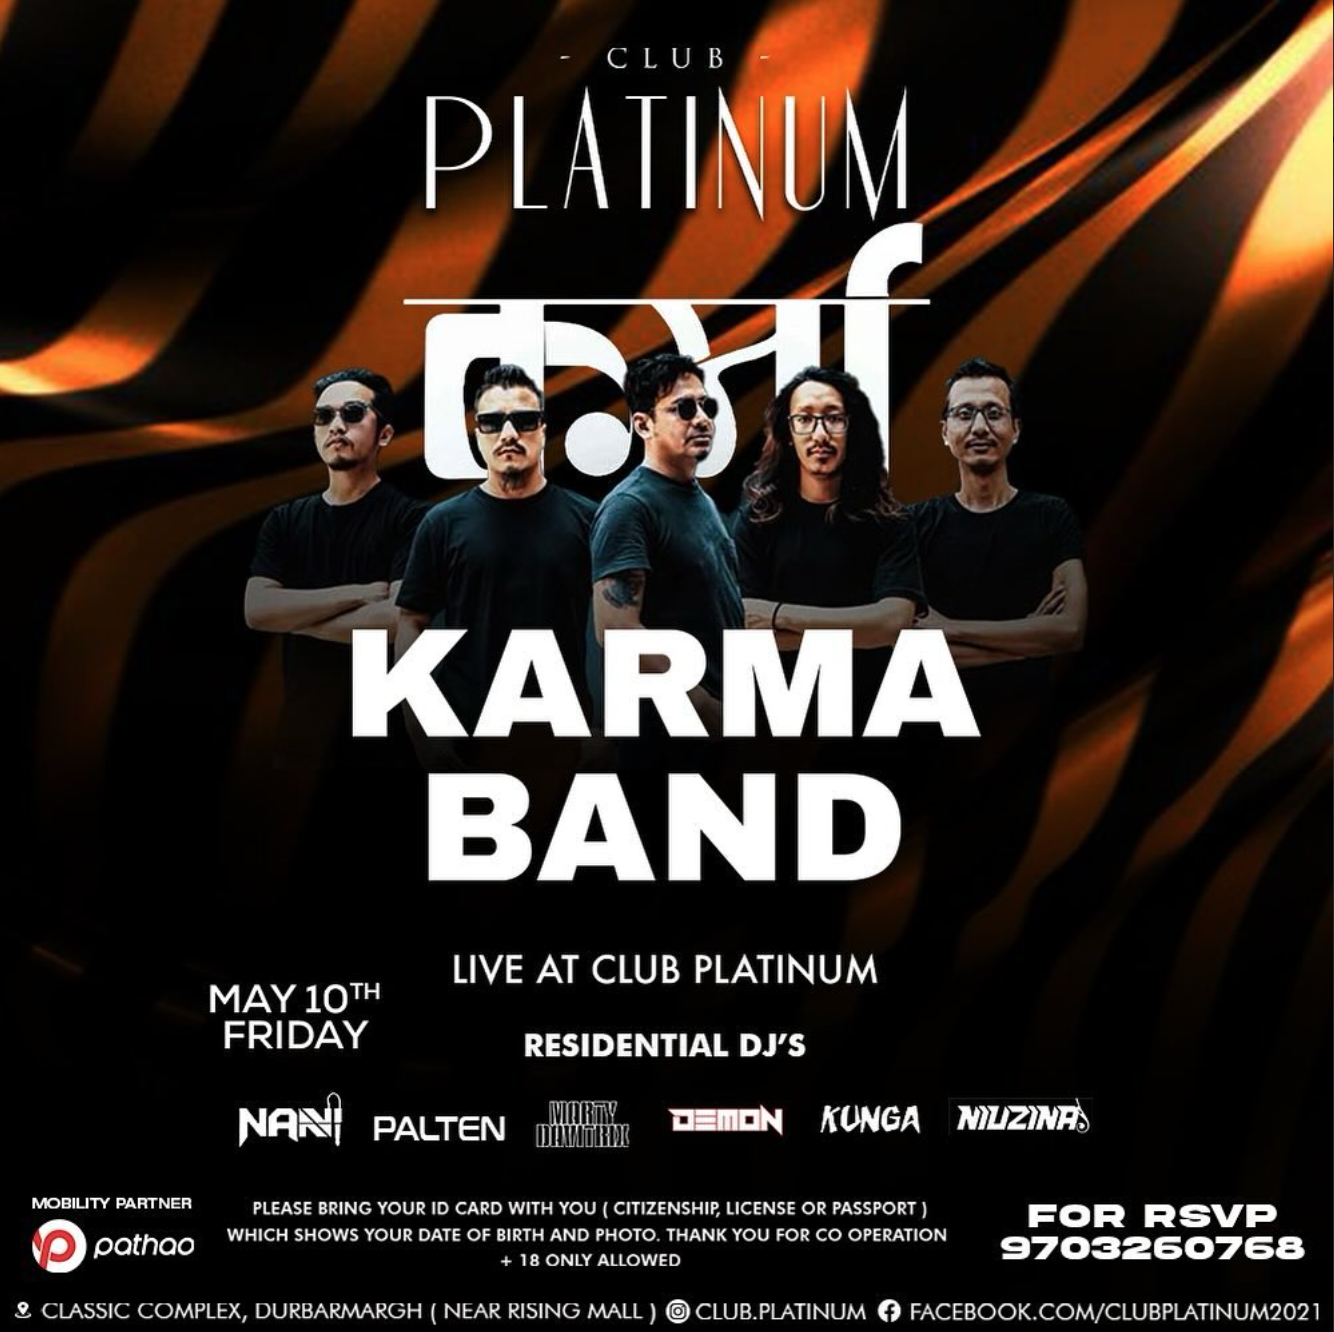 Karma Band Live at Club Platinum